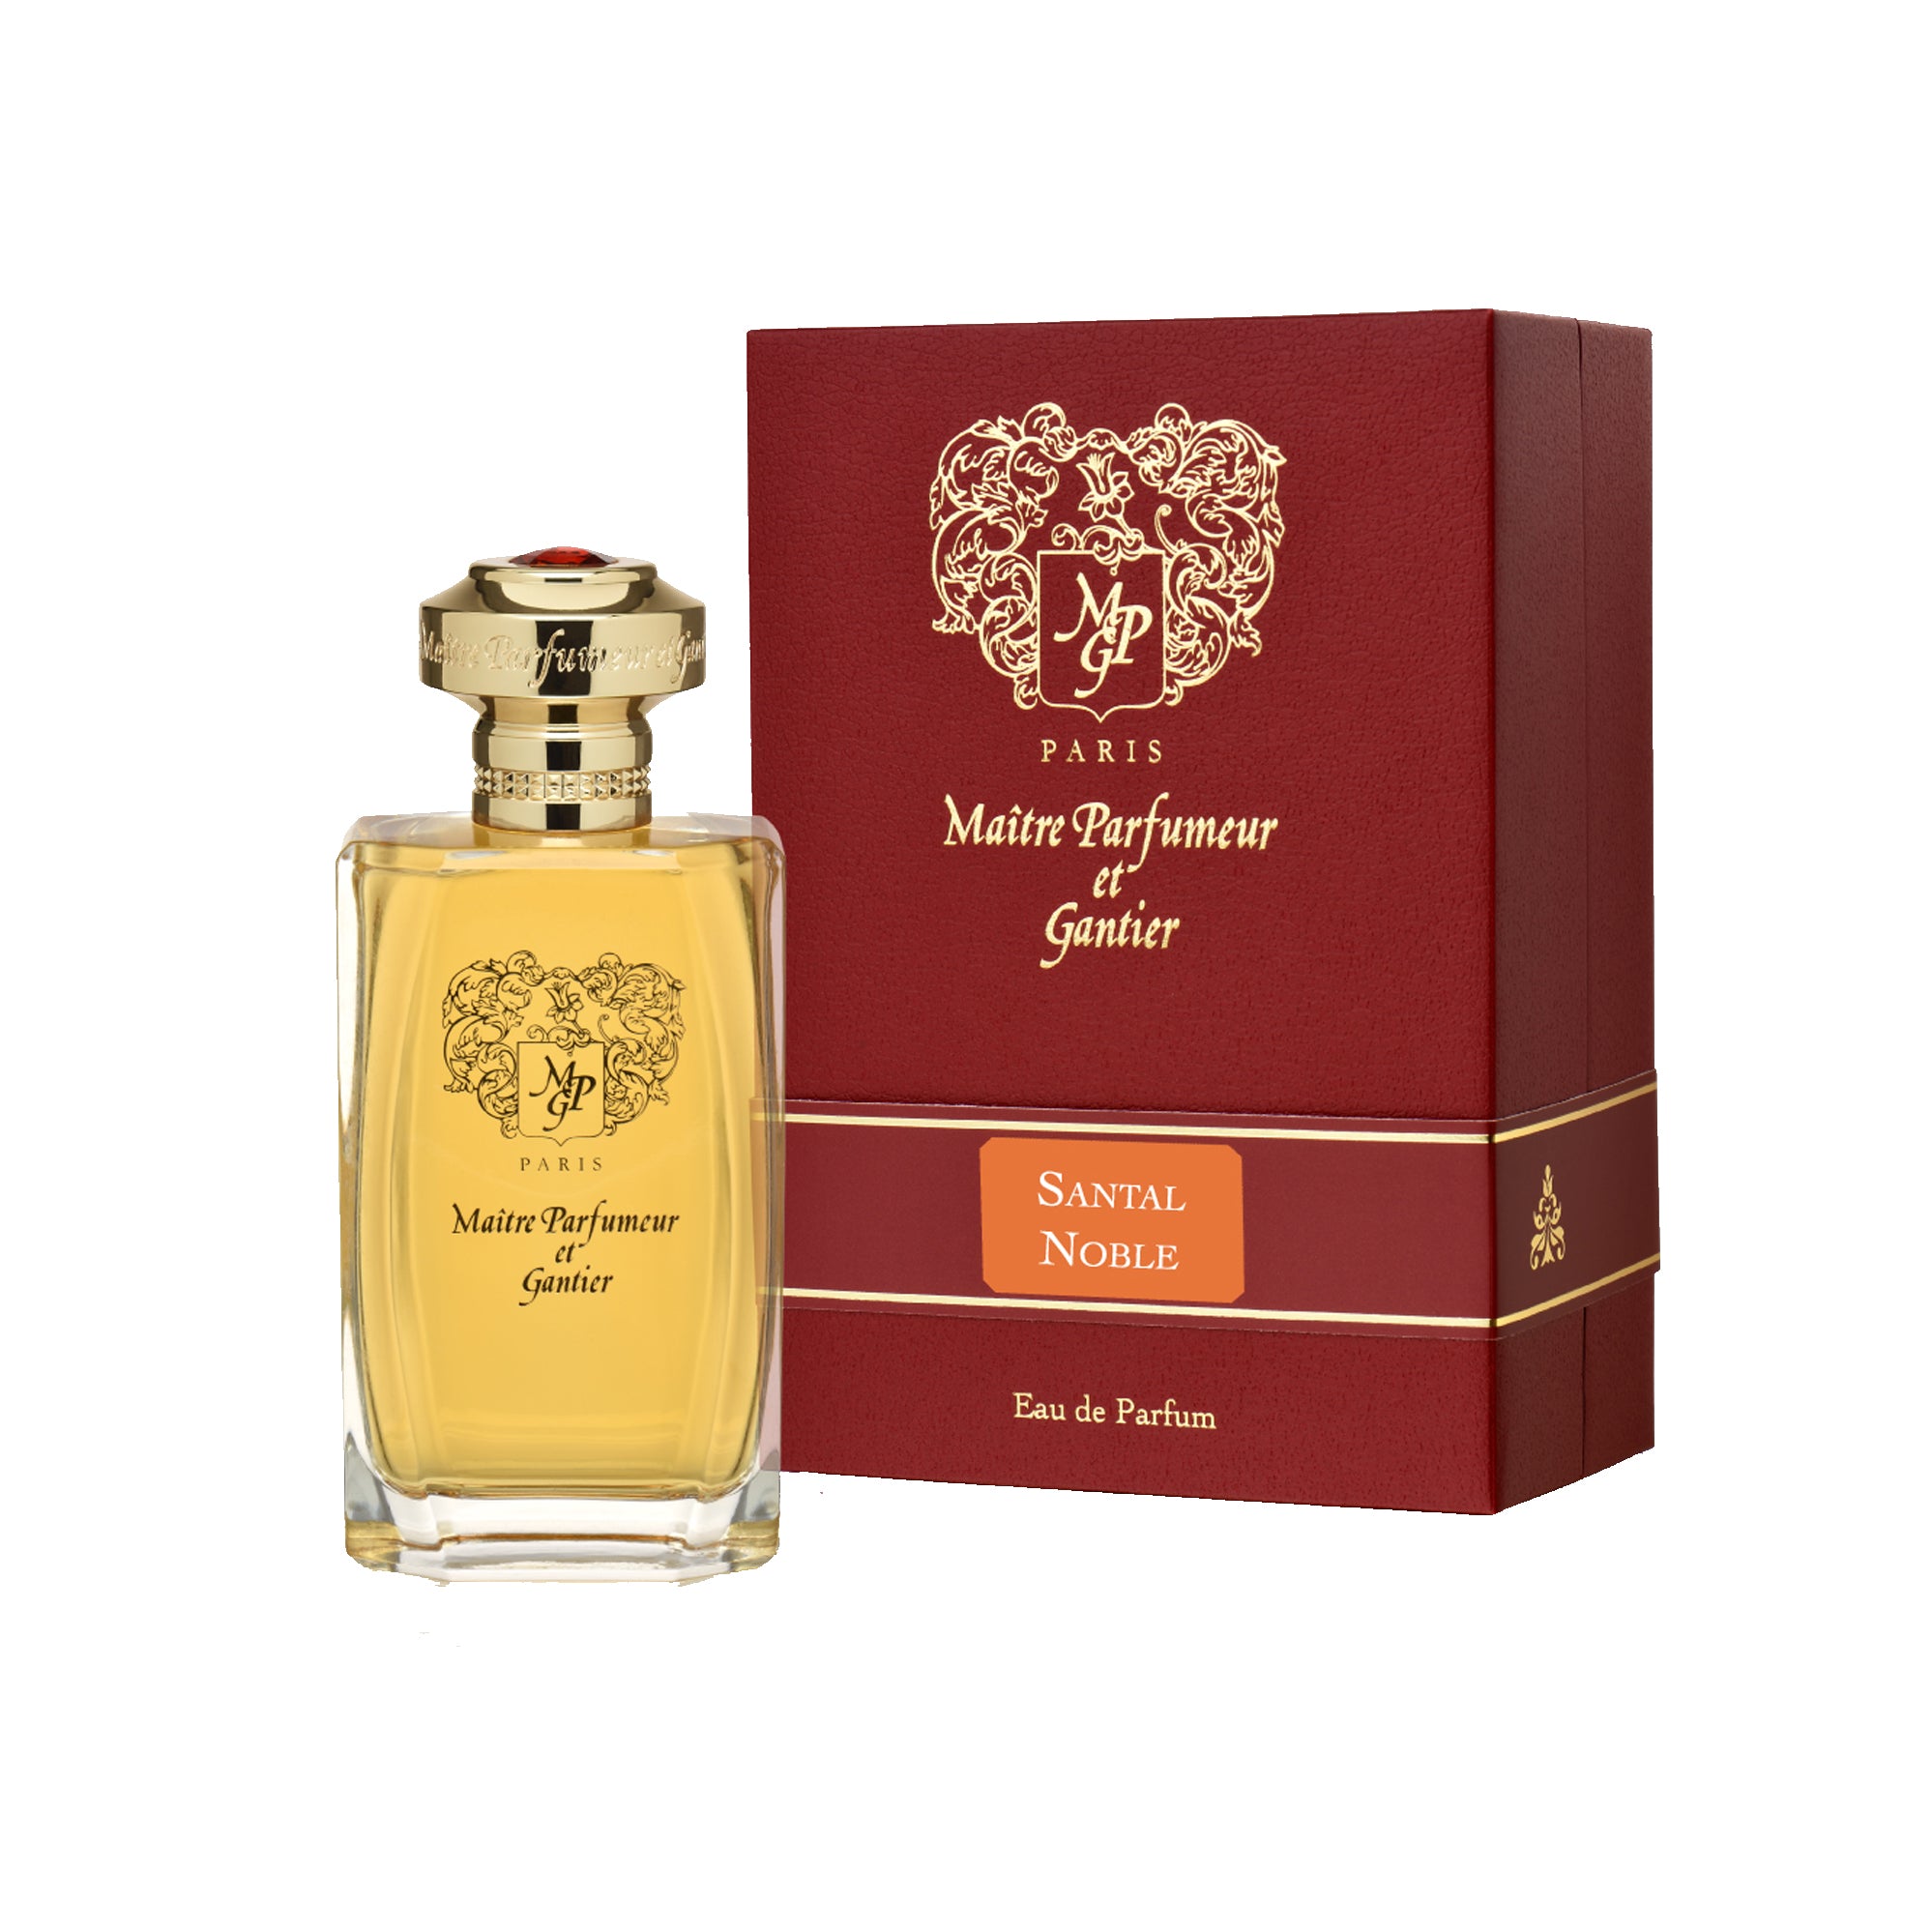 Santal Noble 120ml Eau de Parfum Bottle and Box by MAÎTRE PARFUMEUR ET GANTIER